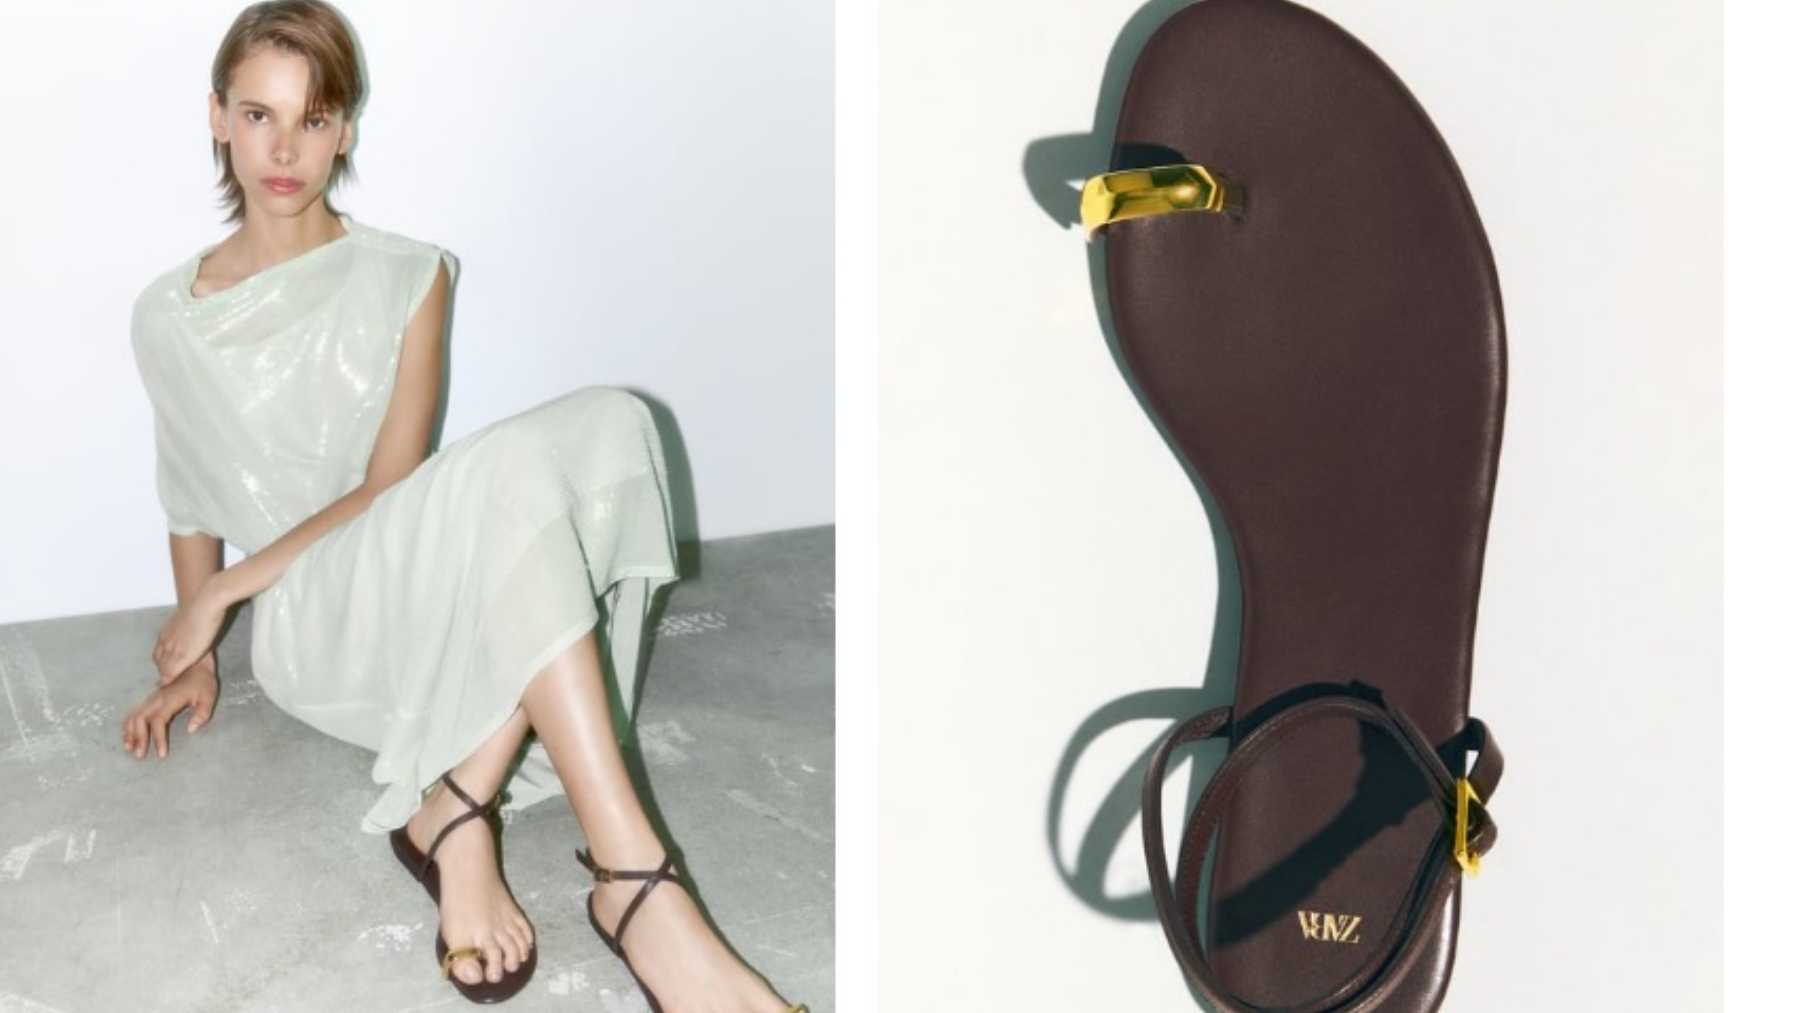 Descubre los mejores looks con sandalias planas que marcan tendencia / Foto: Zara